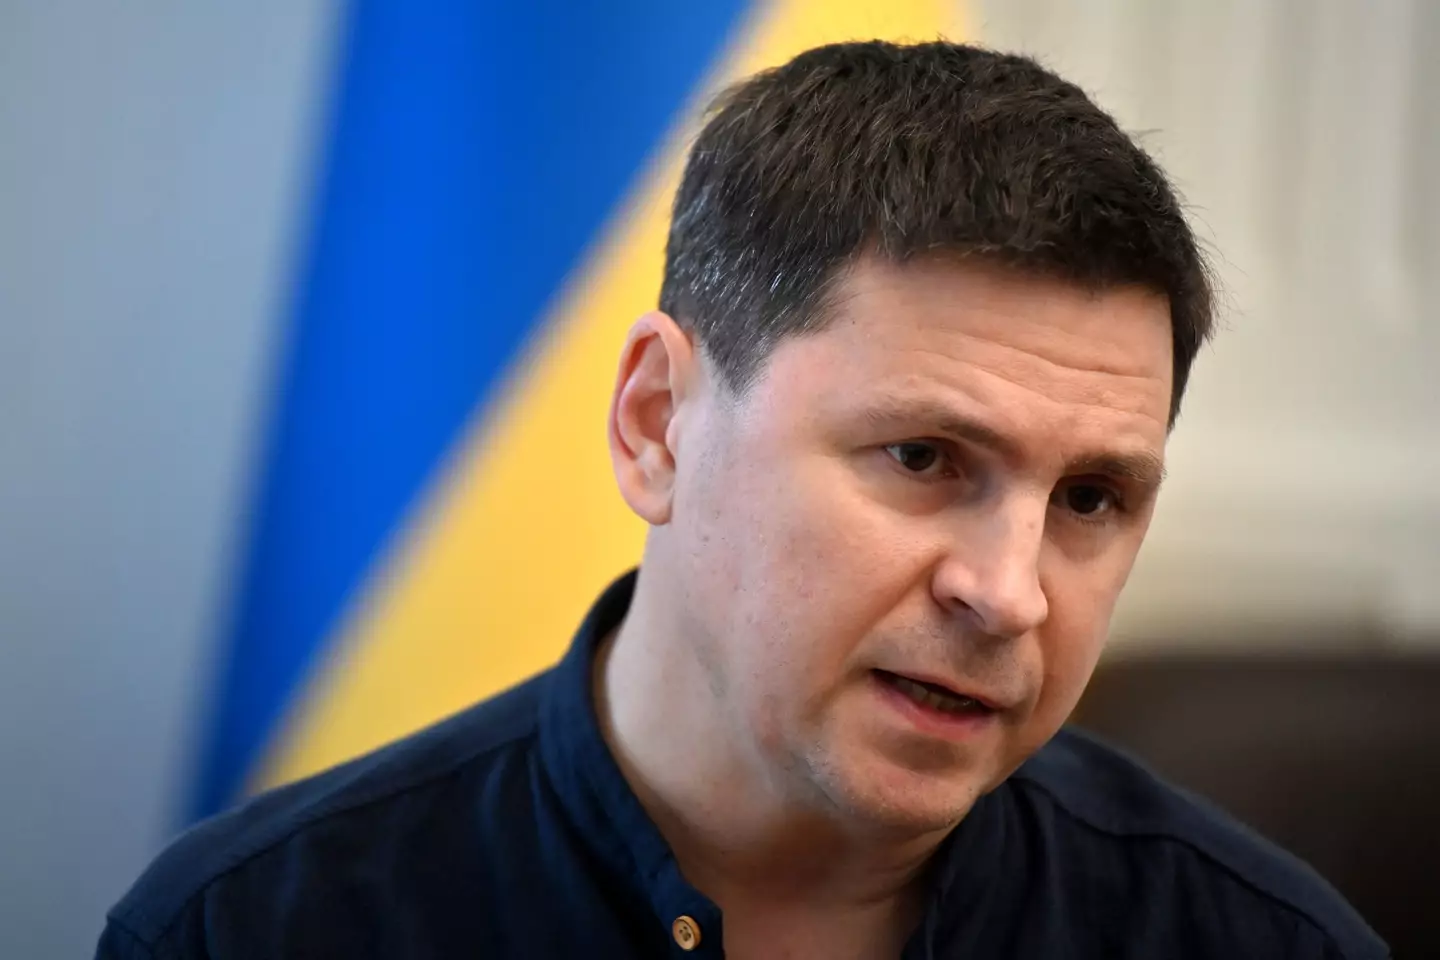 Adviser to the President of Ukraine Volodymyr Zelenskyy, Mykhailo Podolyak.